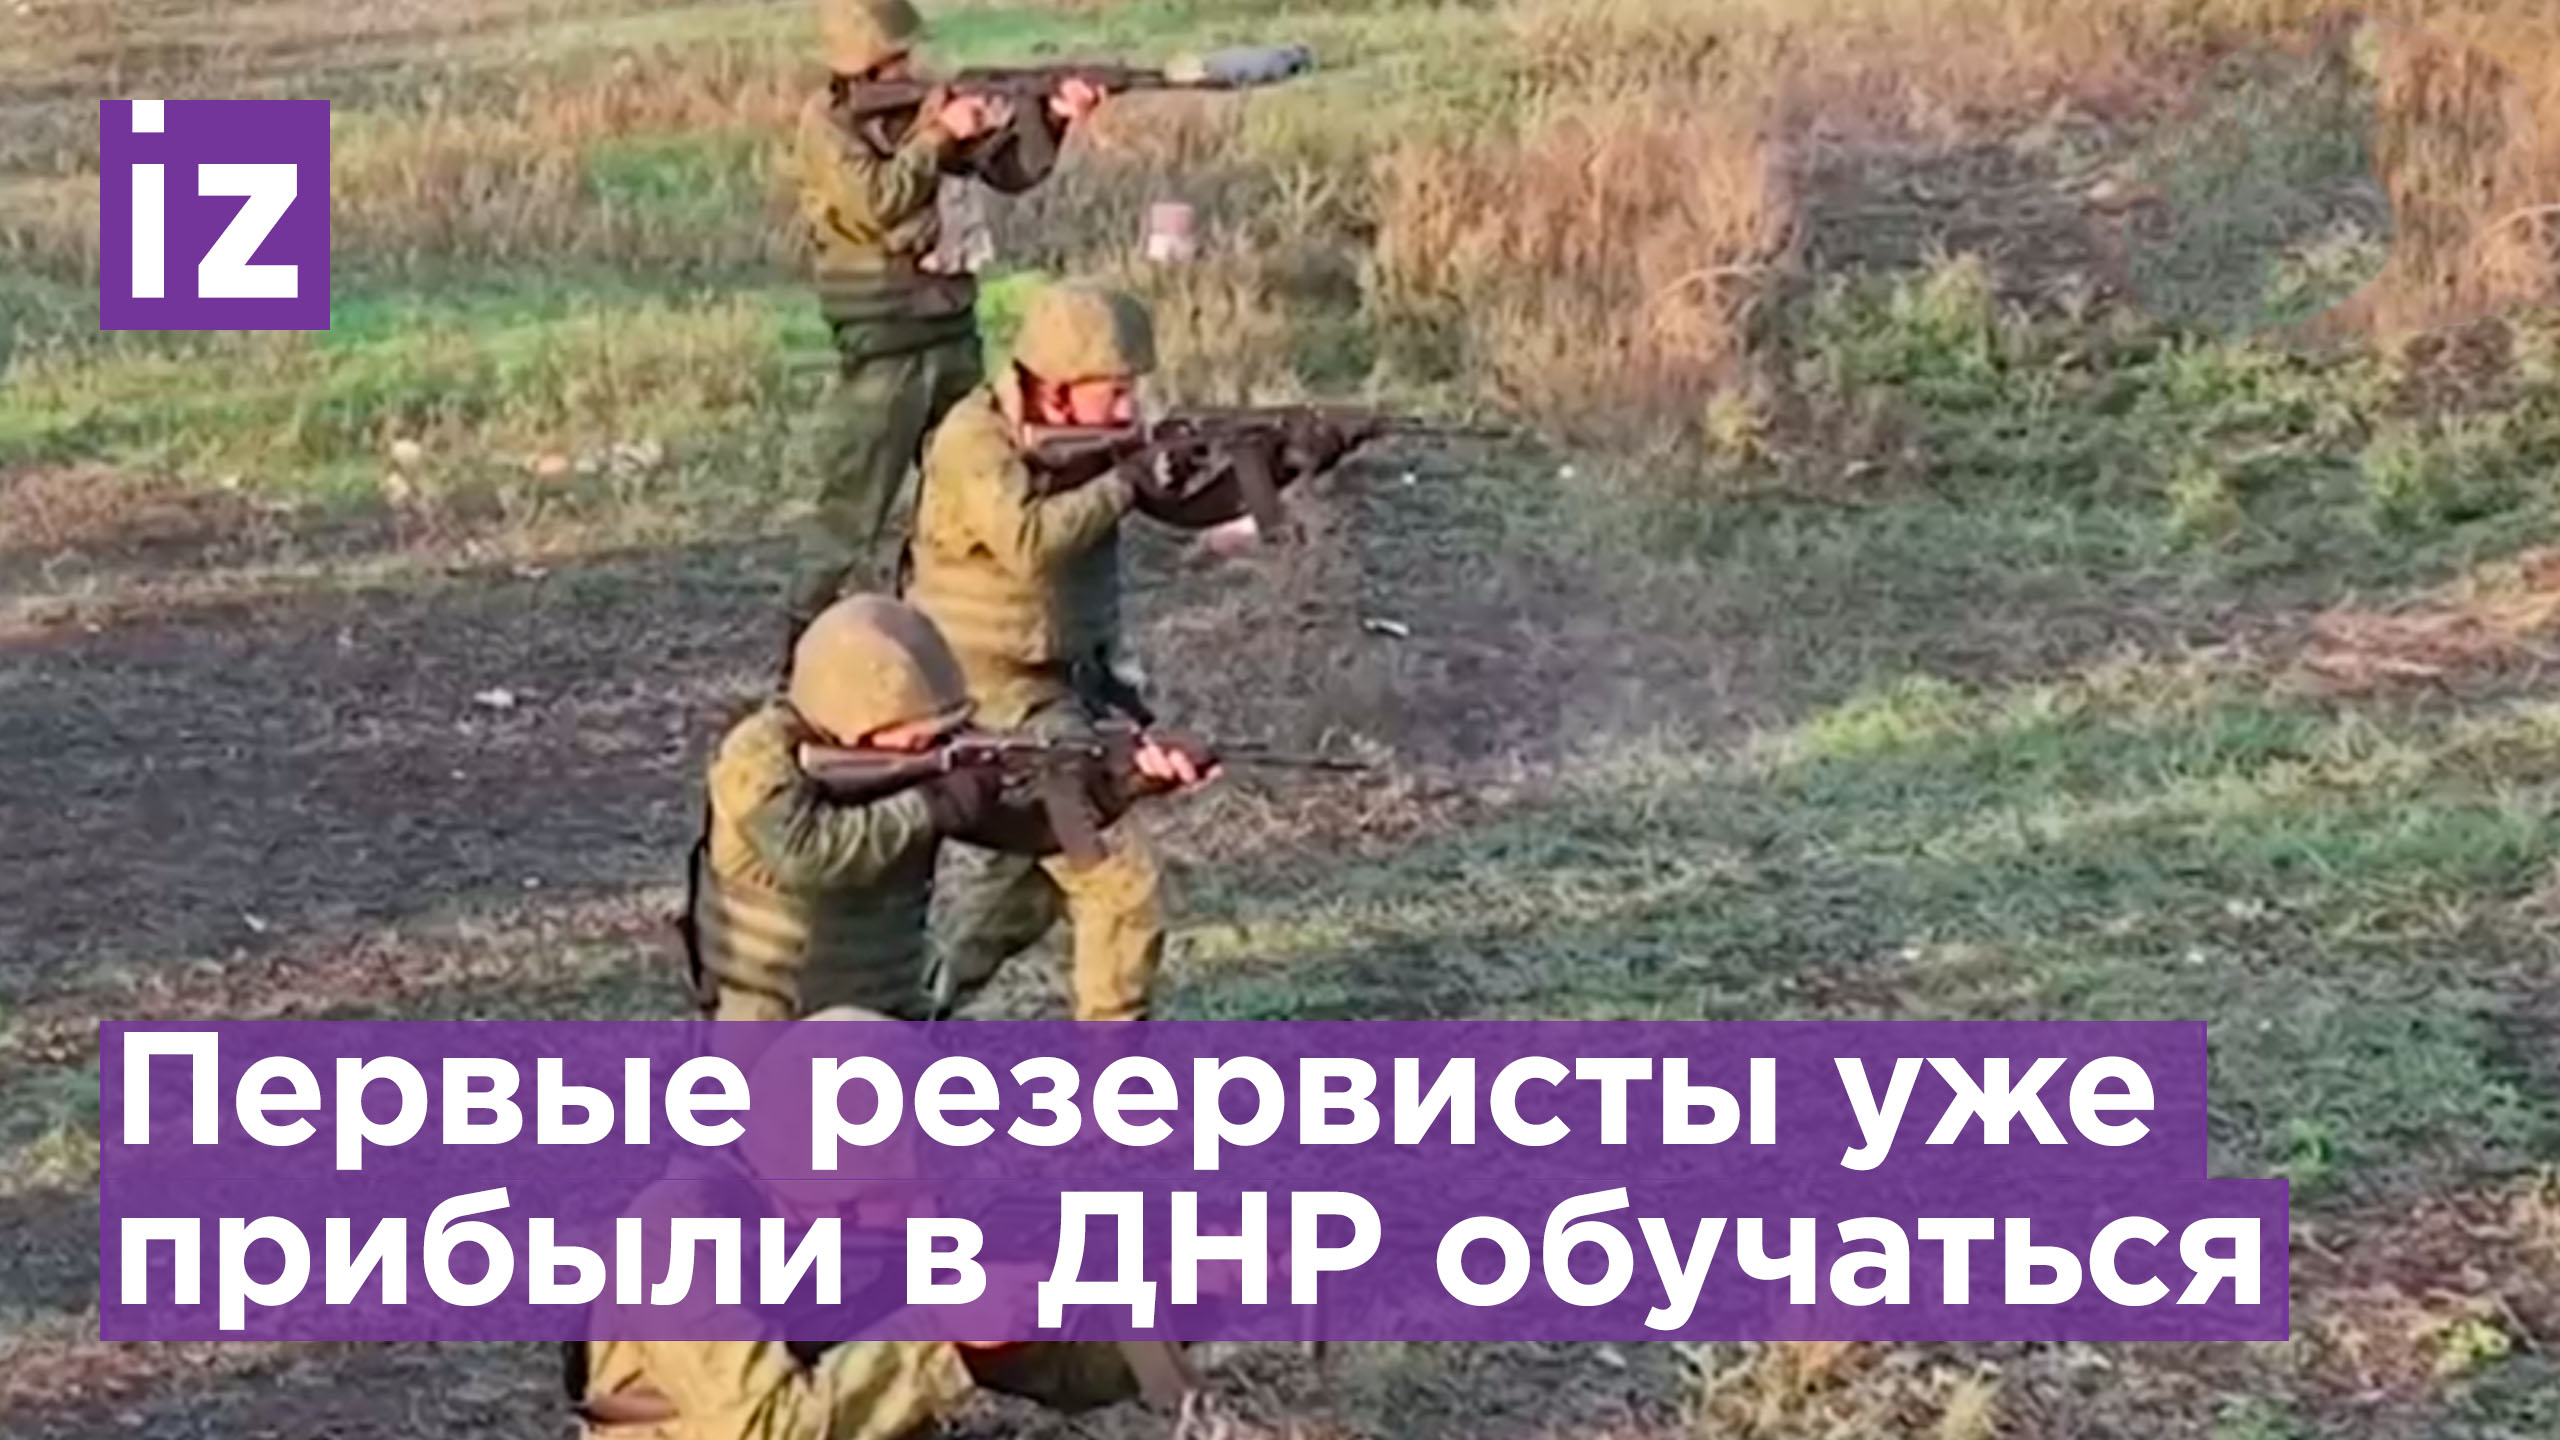 Первые мобилизованные россияне прибыли в ДНР и проходят боевую подготовку. Видео Народной милиции